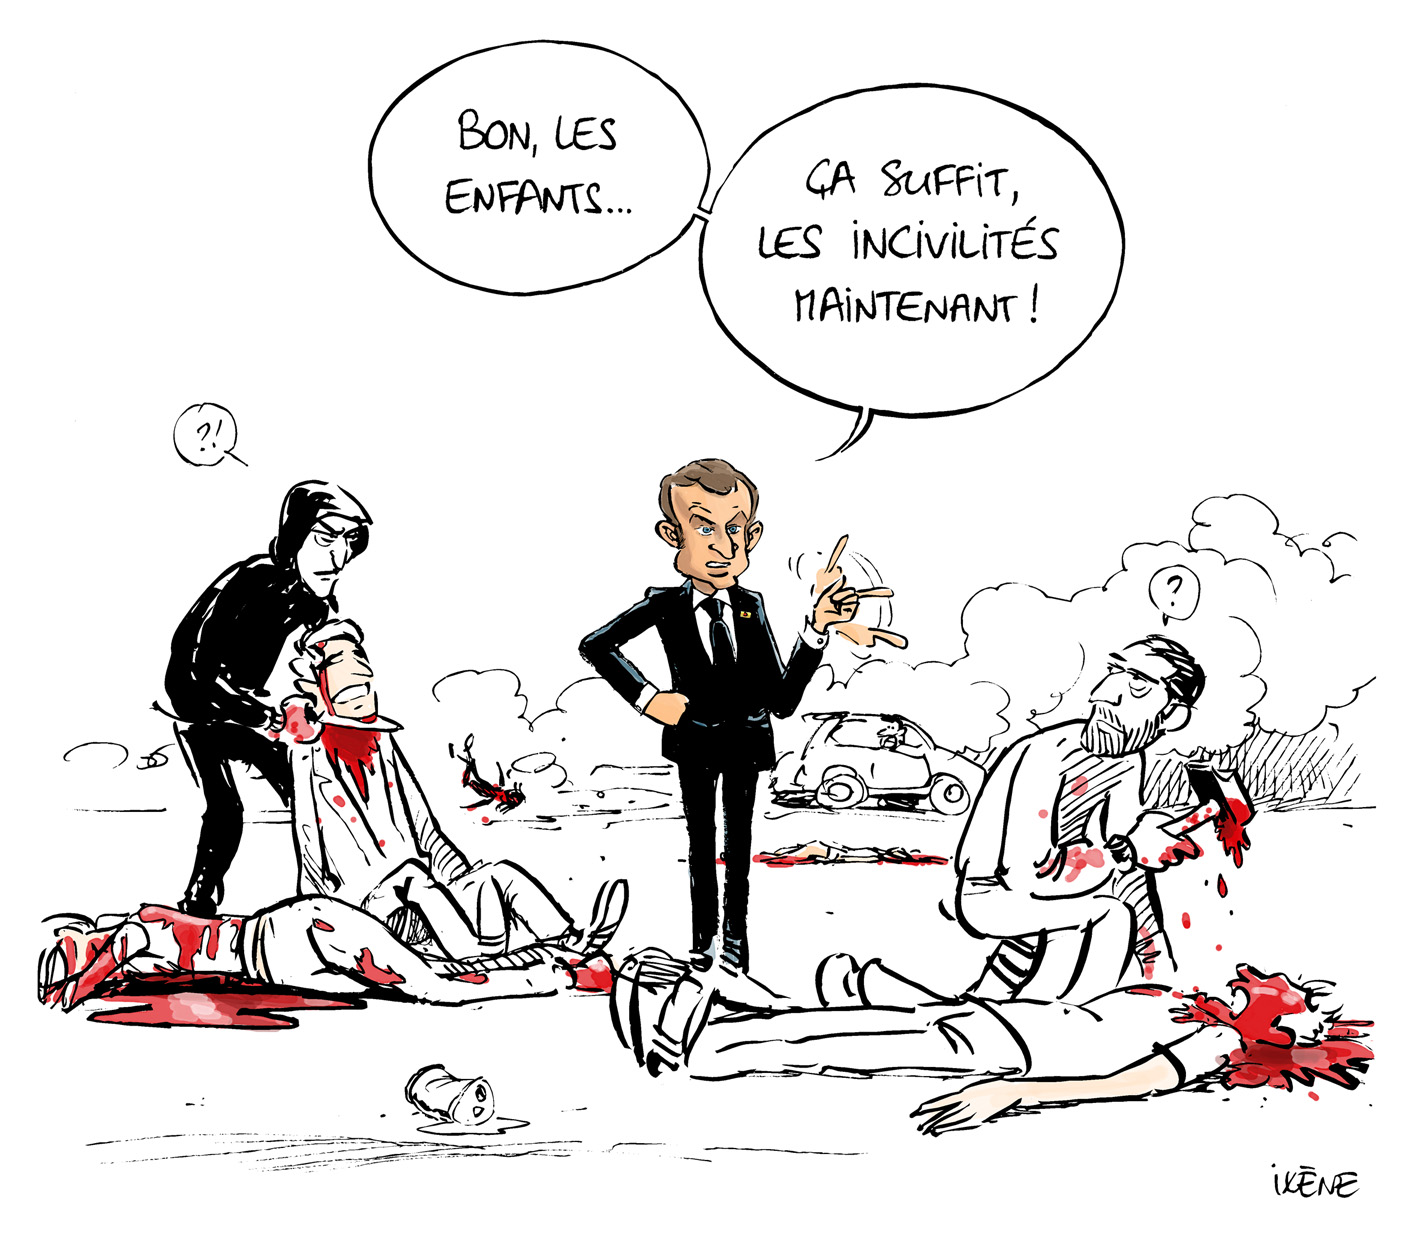 Ixène - Dessinateur on Twitter: "Le monde parallèle de M. Macron. # incivilites #Incivilités… "